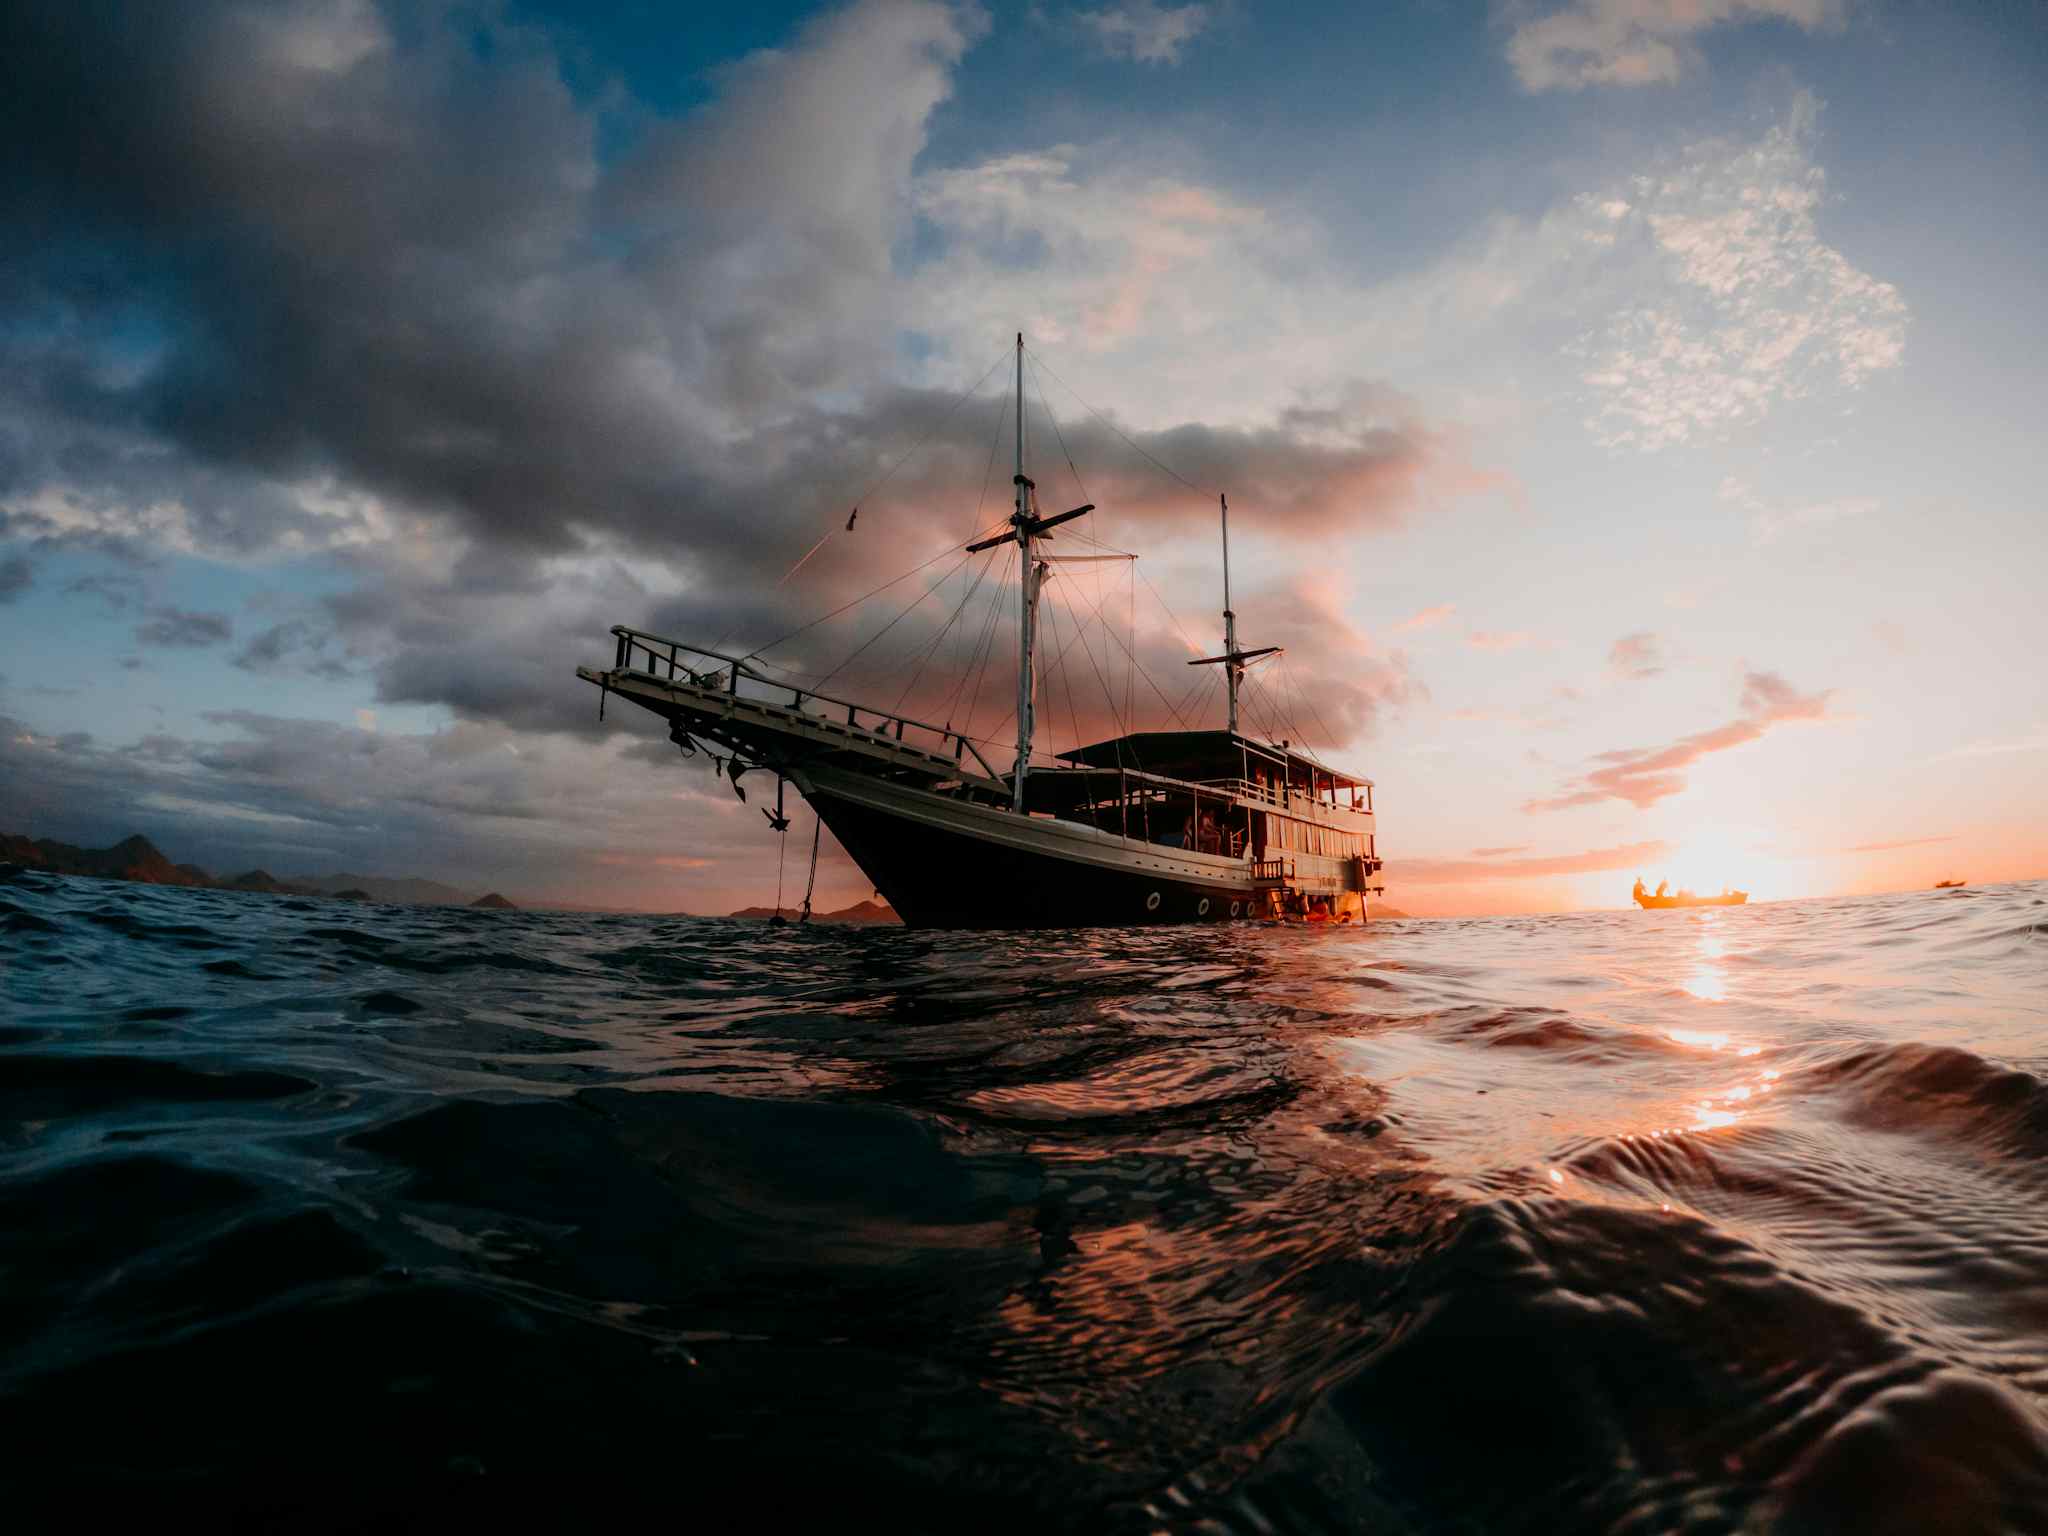 Komodo Islands live-aboard boat